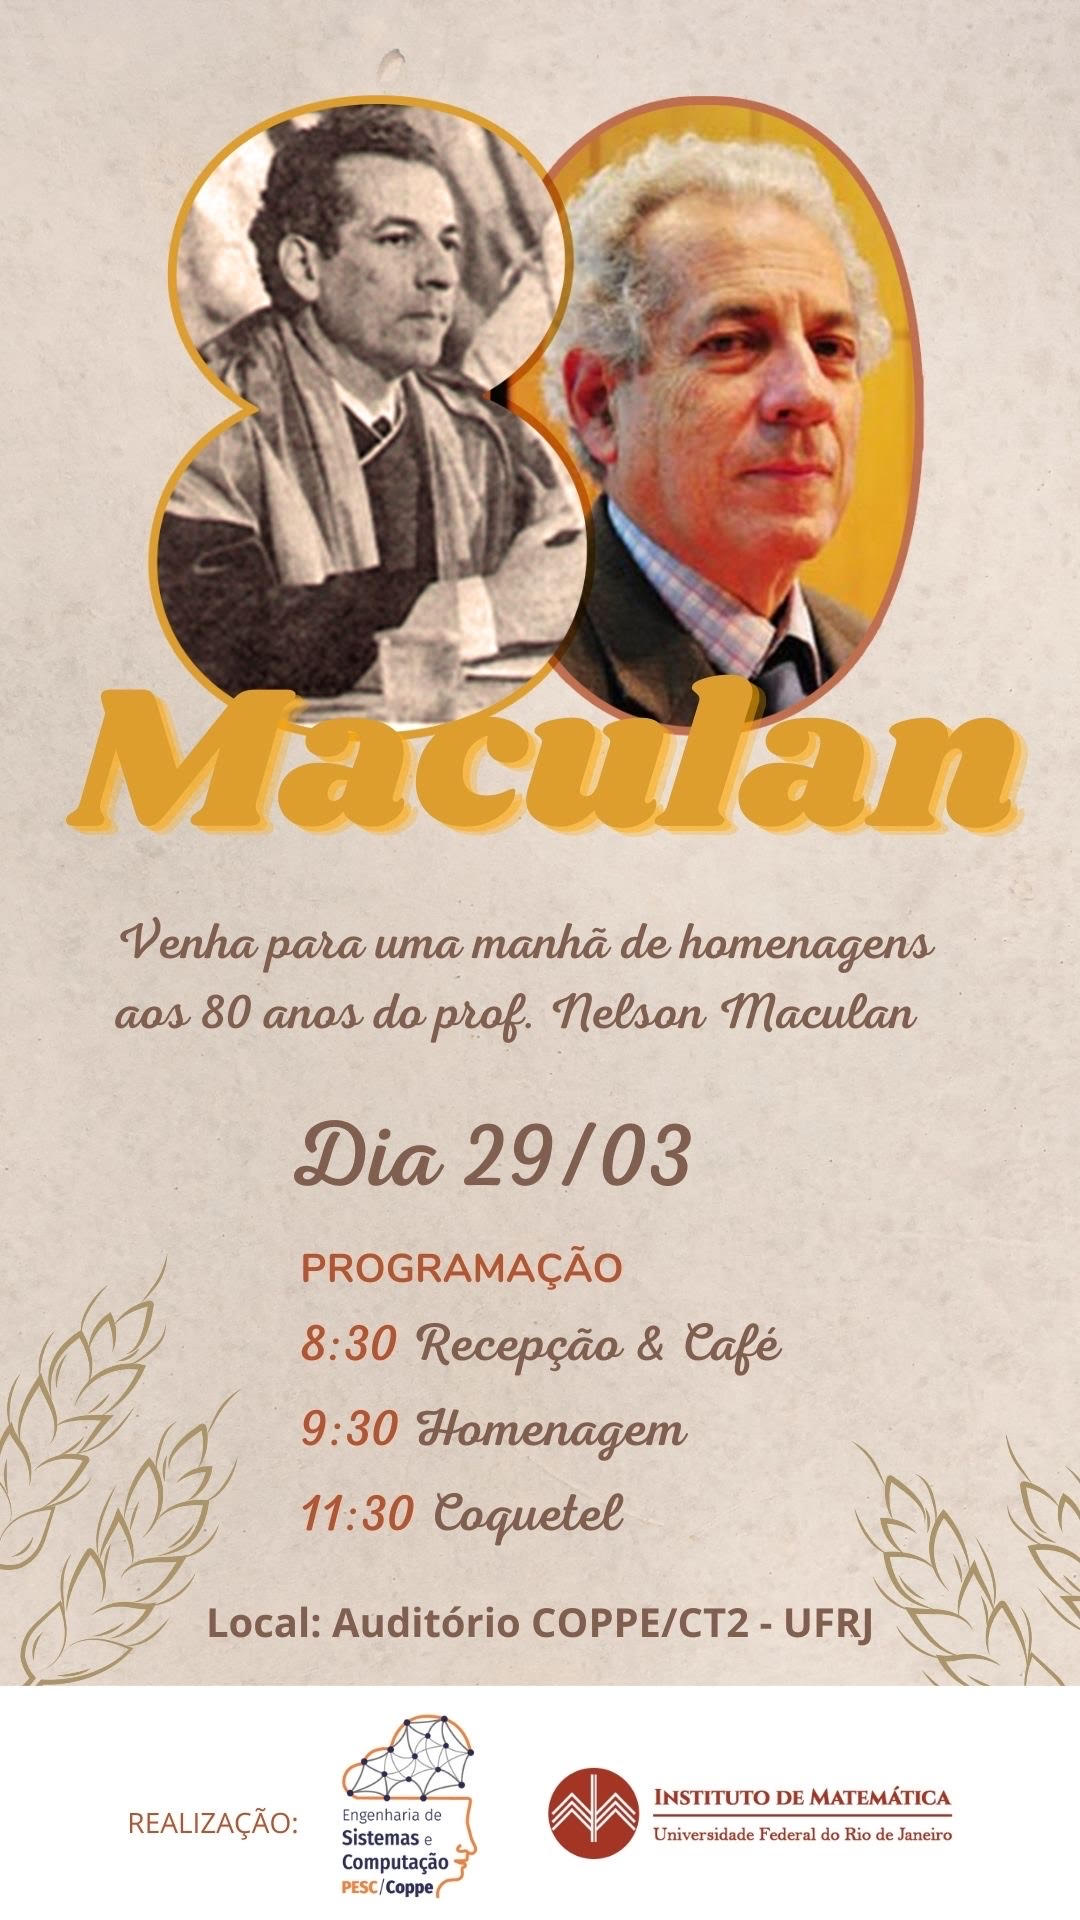 Homenagem ao professor Nelson Maculan